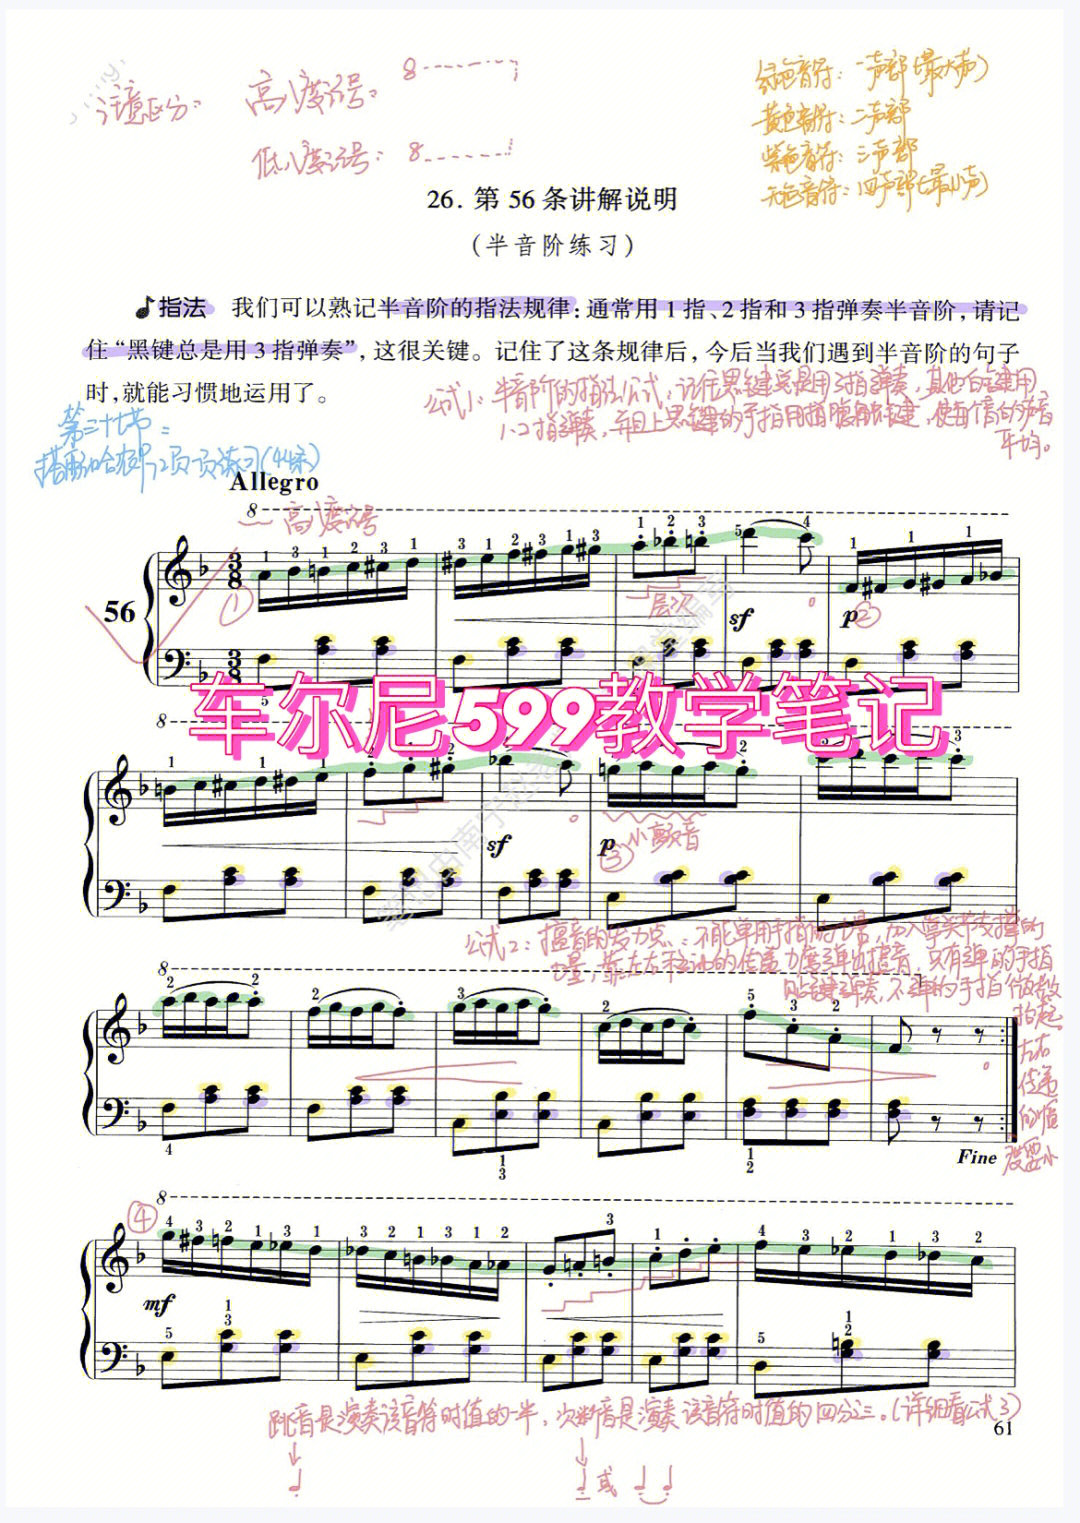 钢琴车尔尼599详细教学笔记纯分享